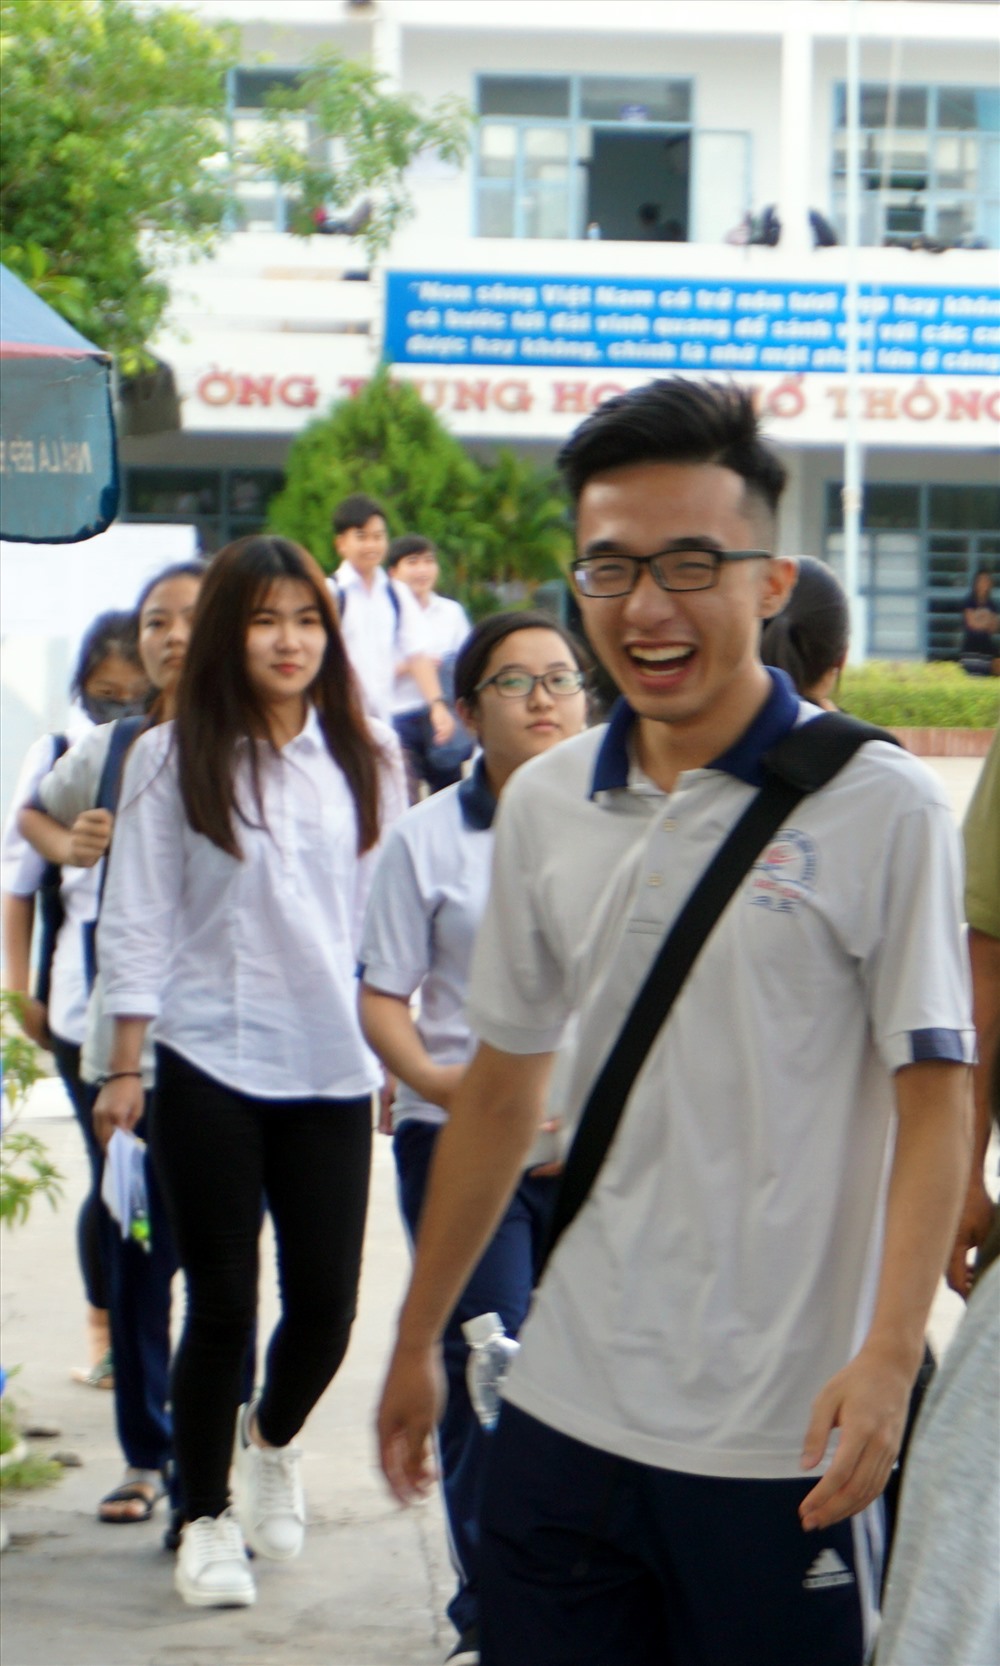 Nét mặt cười tươi của TS Bạc Liêu sau khi ra khỏi phòng thi môn thi thứ nhất (ảnh Nhật Hồ)